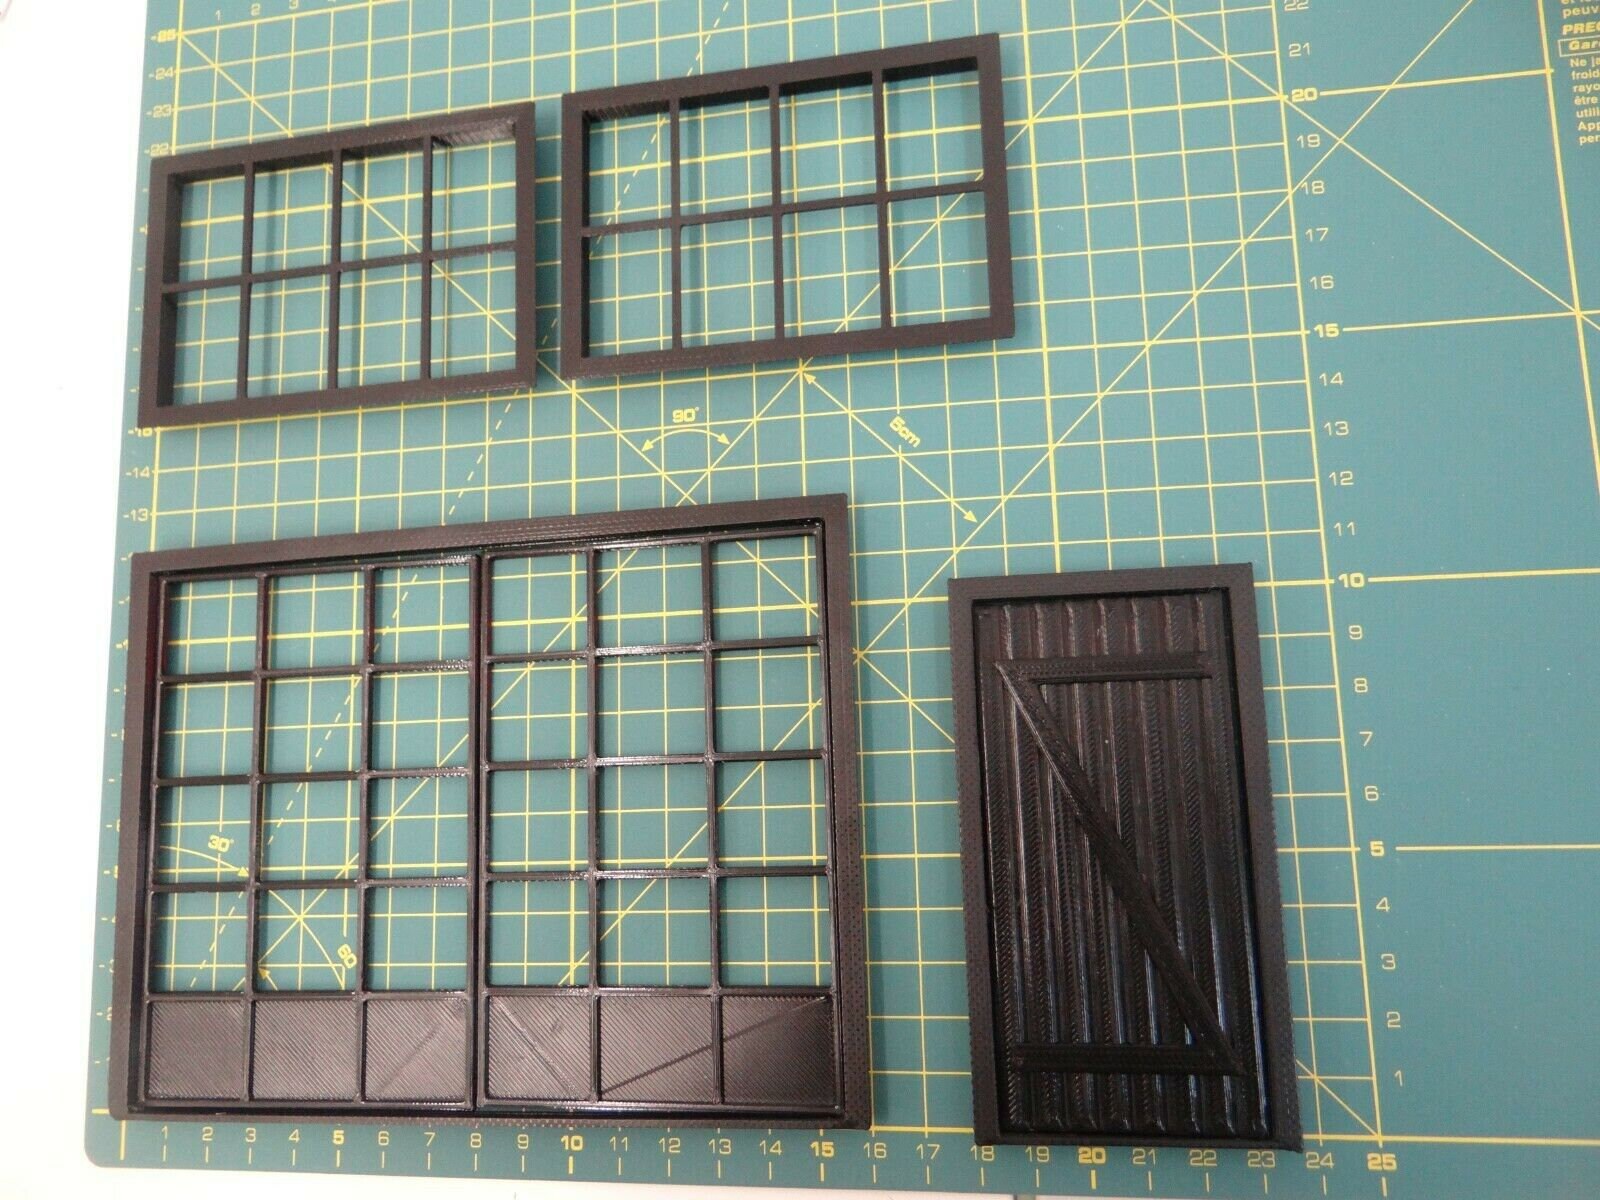 Maßstab 1:18 Fenster und Türen Garagenbau Diorama Teile Miniatur  Modellierartikel Diorama Modellbau - .de